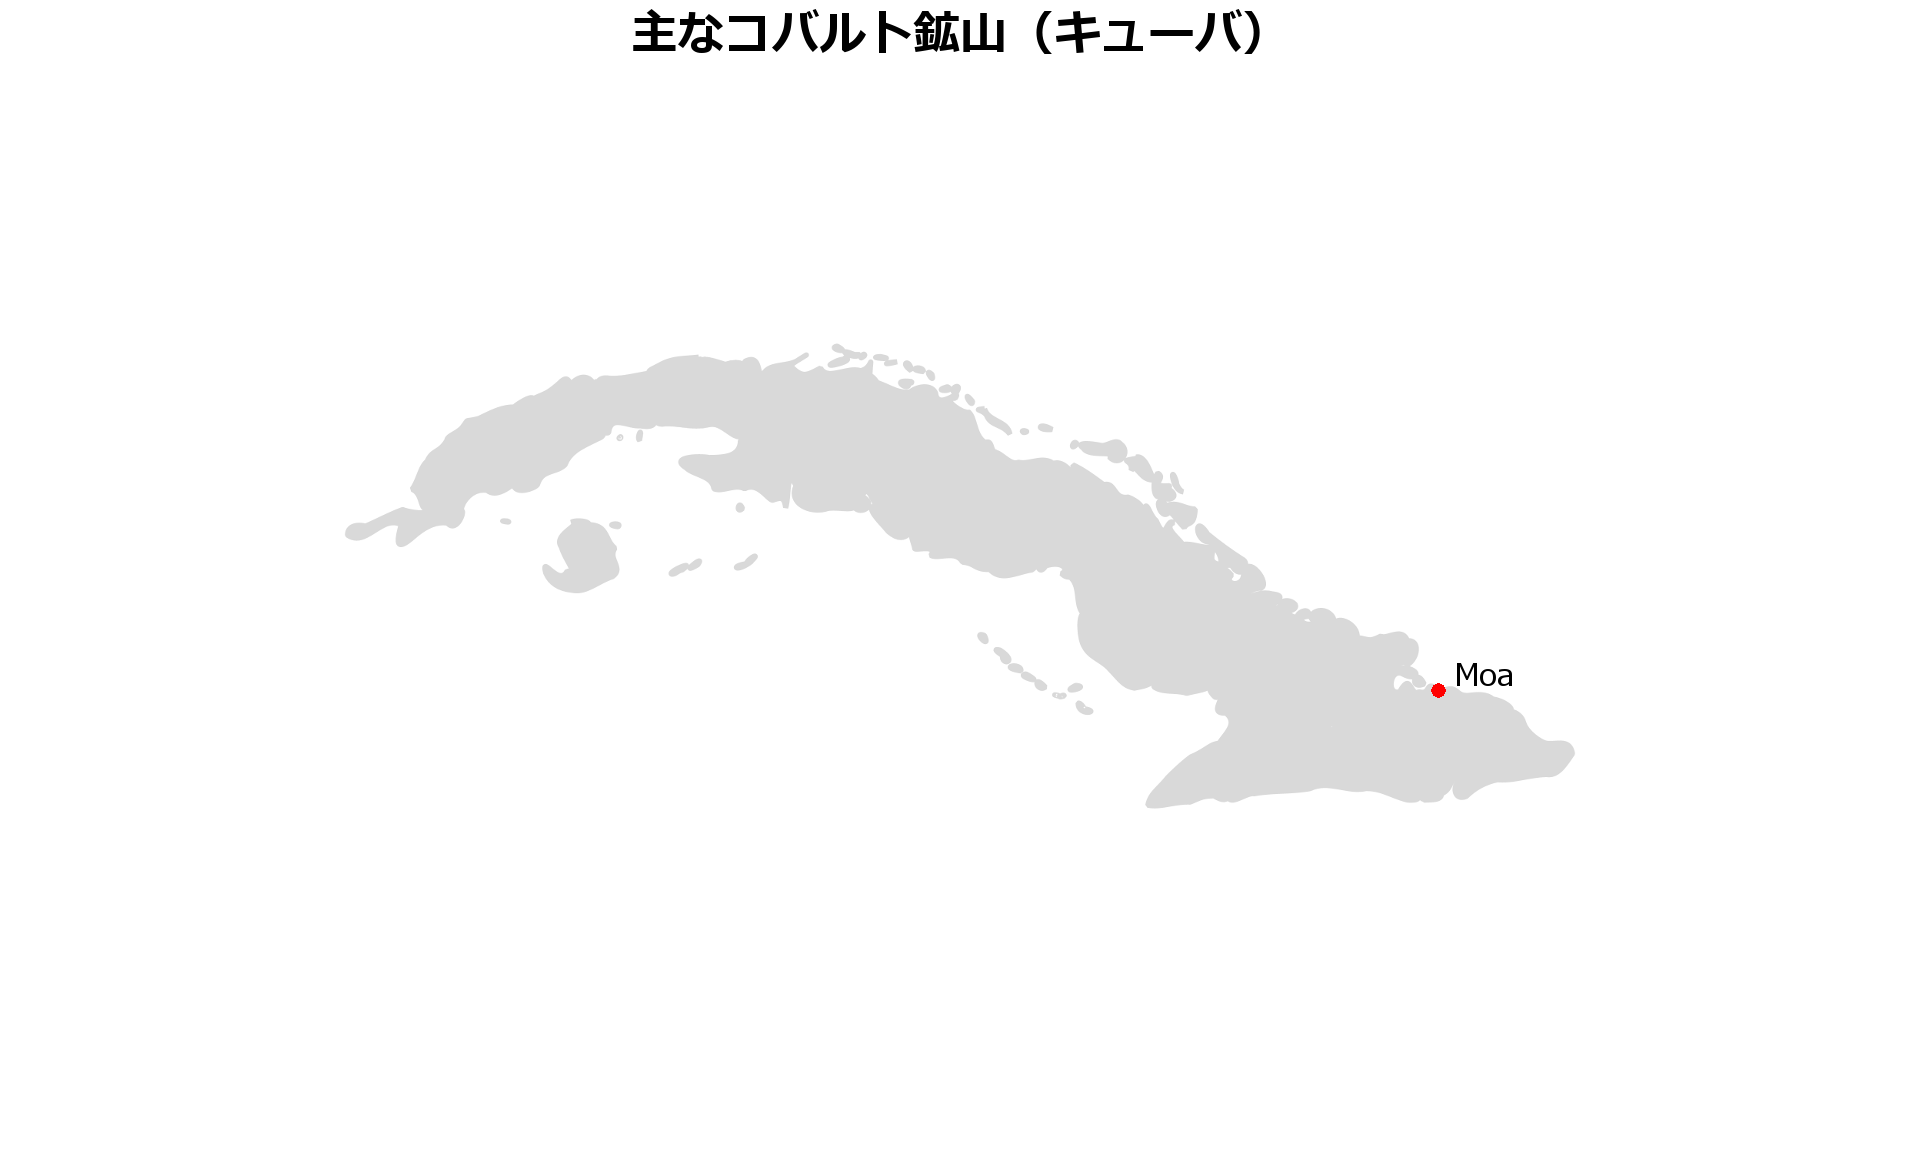 キューバコバルト鉱山地図